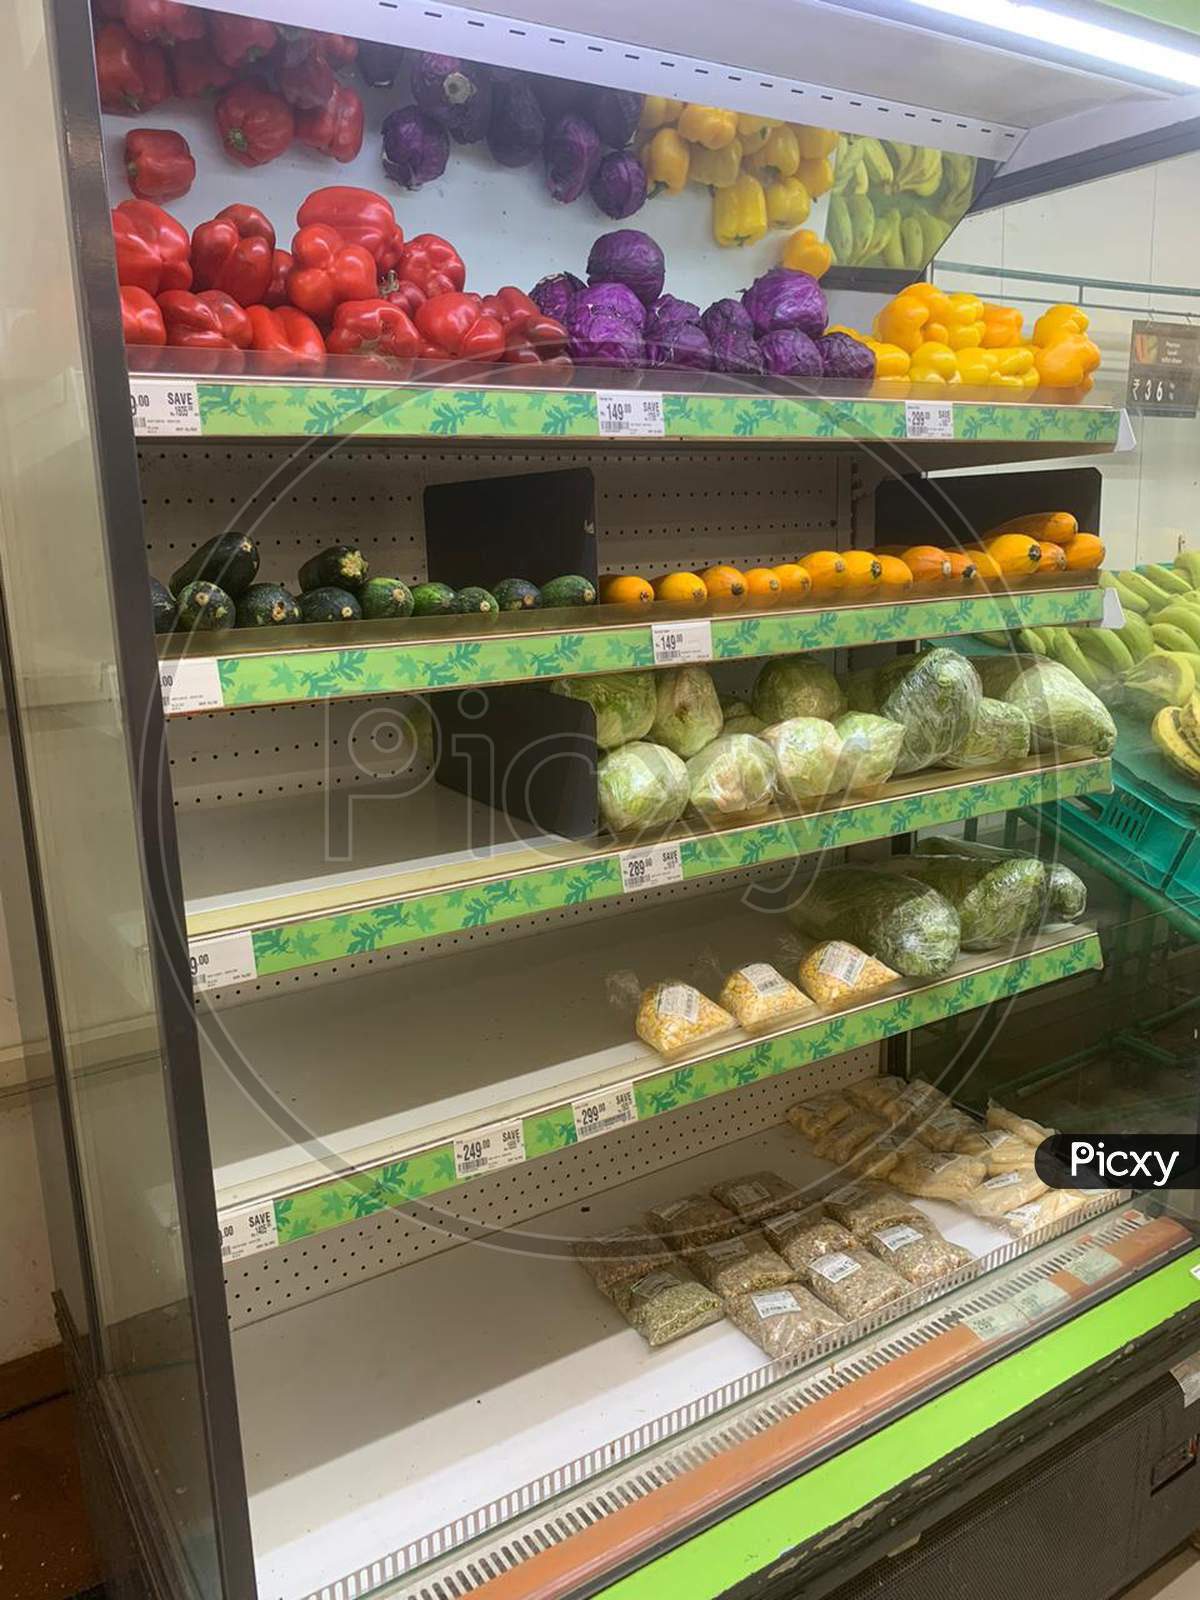 Vegetables on a supermarket shelf